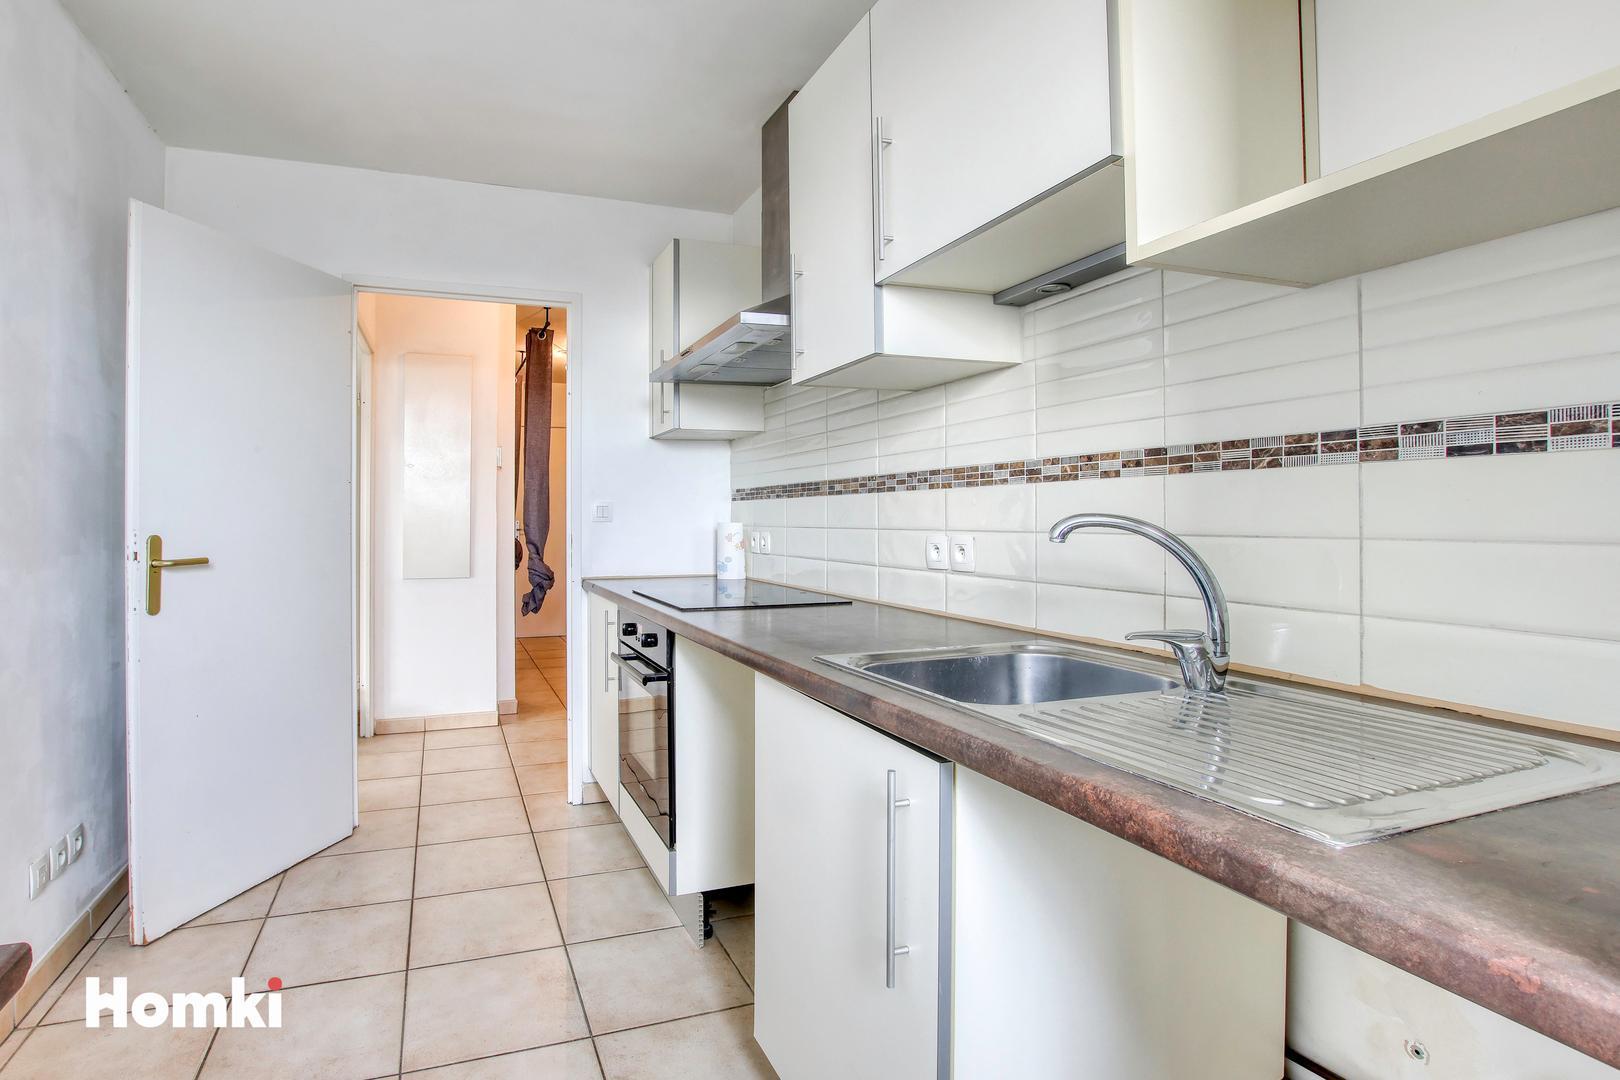 Homki - Vente Appartement  de 71.0 m² à La Ciotat 13600